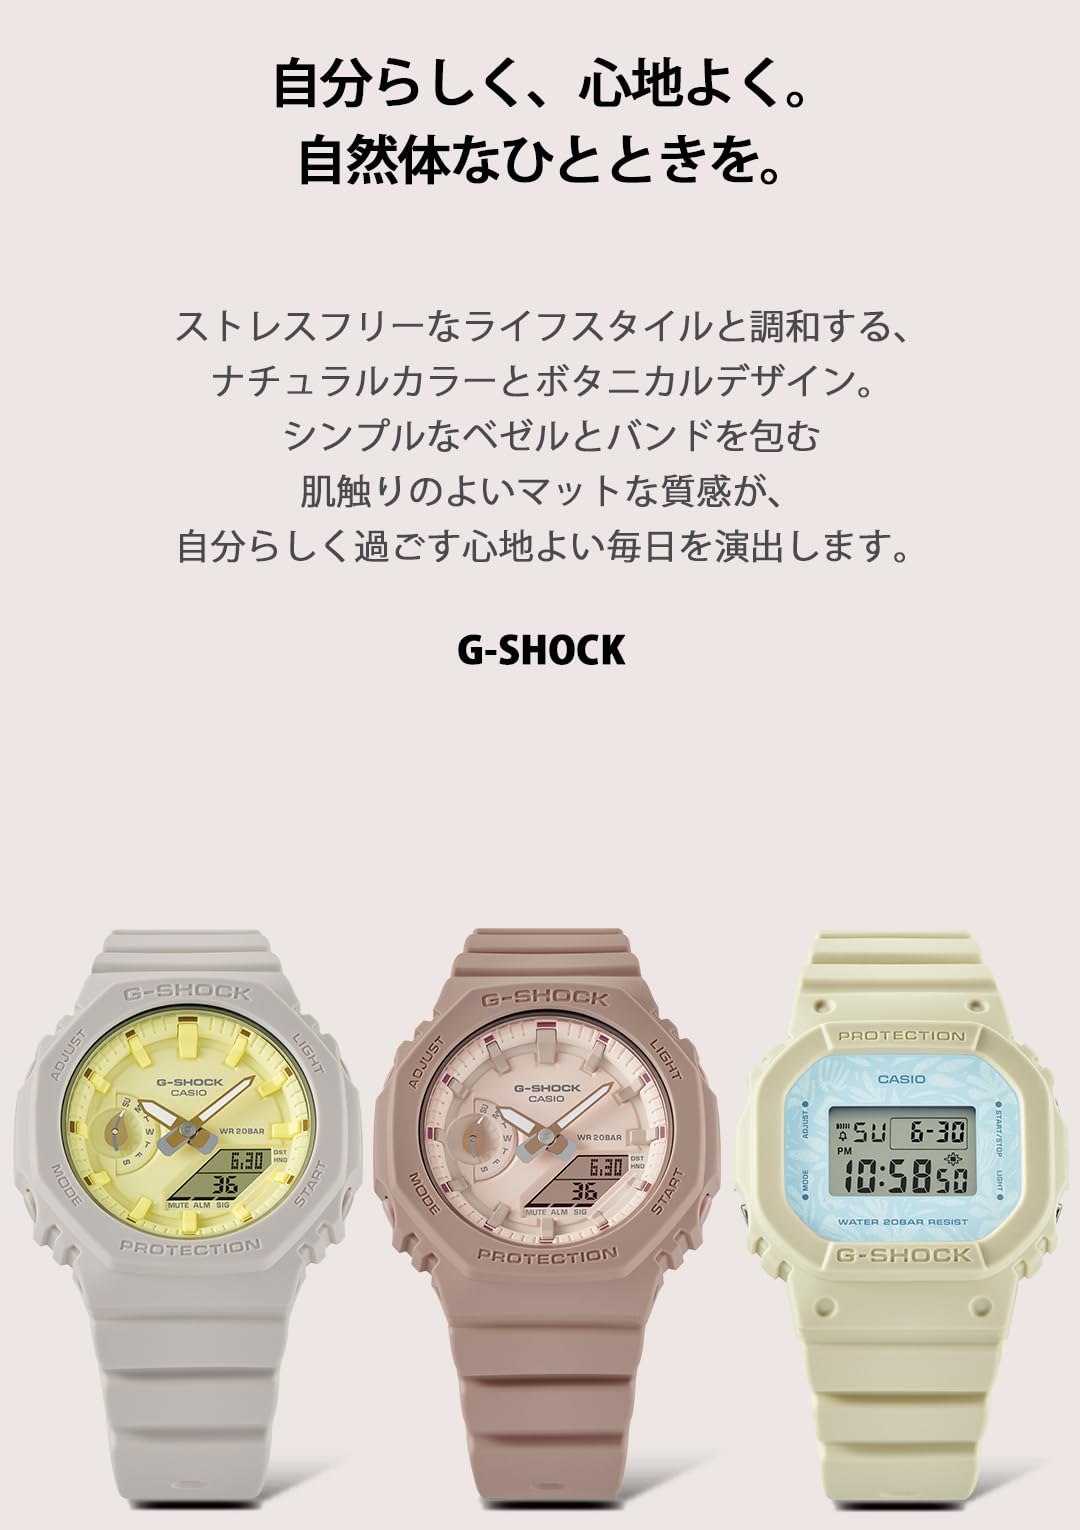 ジーショック [カシオ] 腕時計 【国内正規品】ミッドサイズモデル バイオマスプラスチック採用 GMA-S2100NC-4AJF レディース ベージュ×イエロー - BanzaiHobby